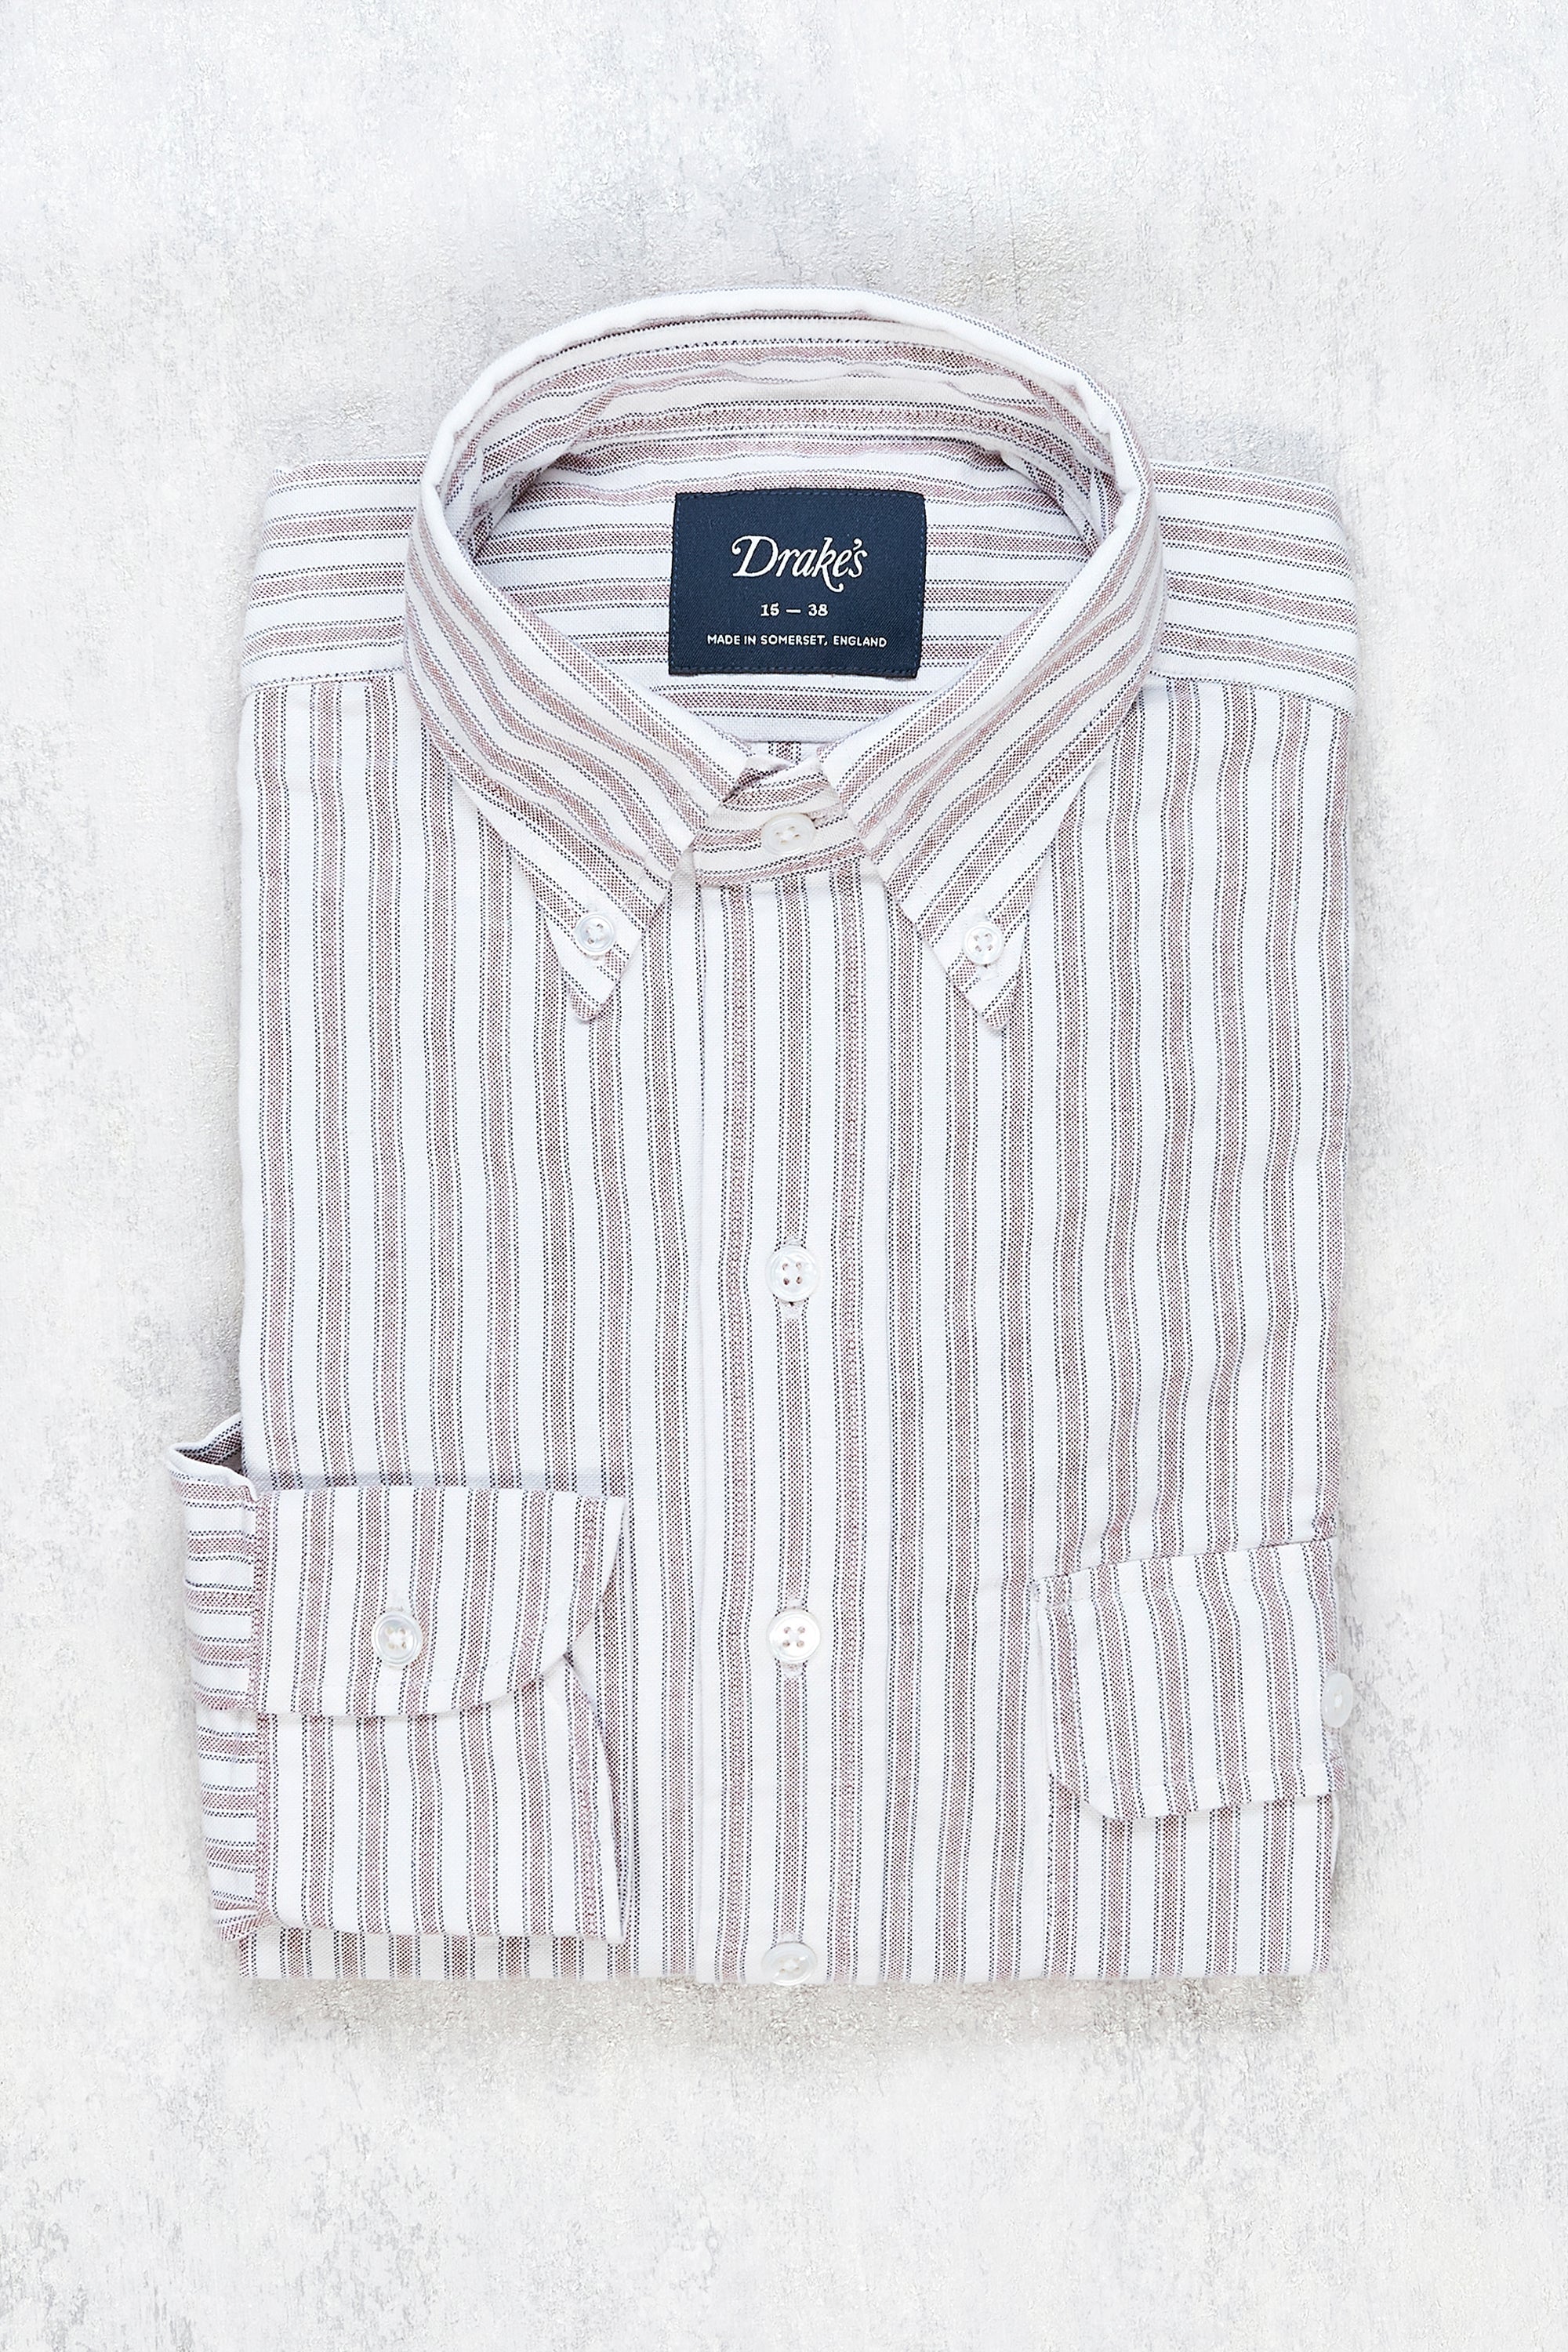 Drake's White with Brown/Blue Stripe Cotton Button-down Shirt